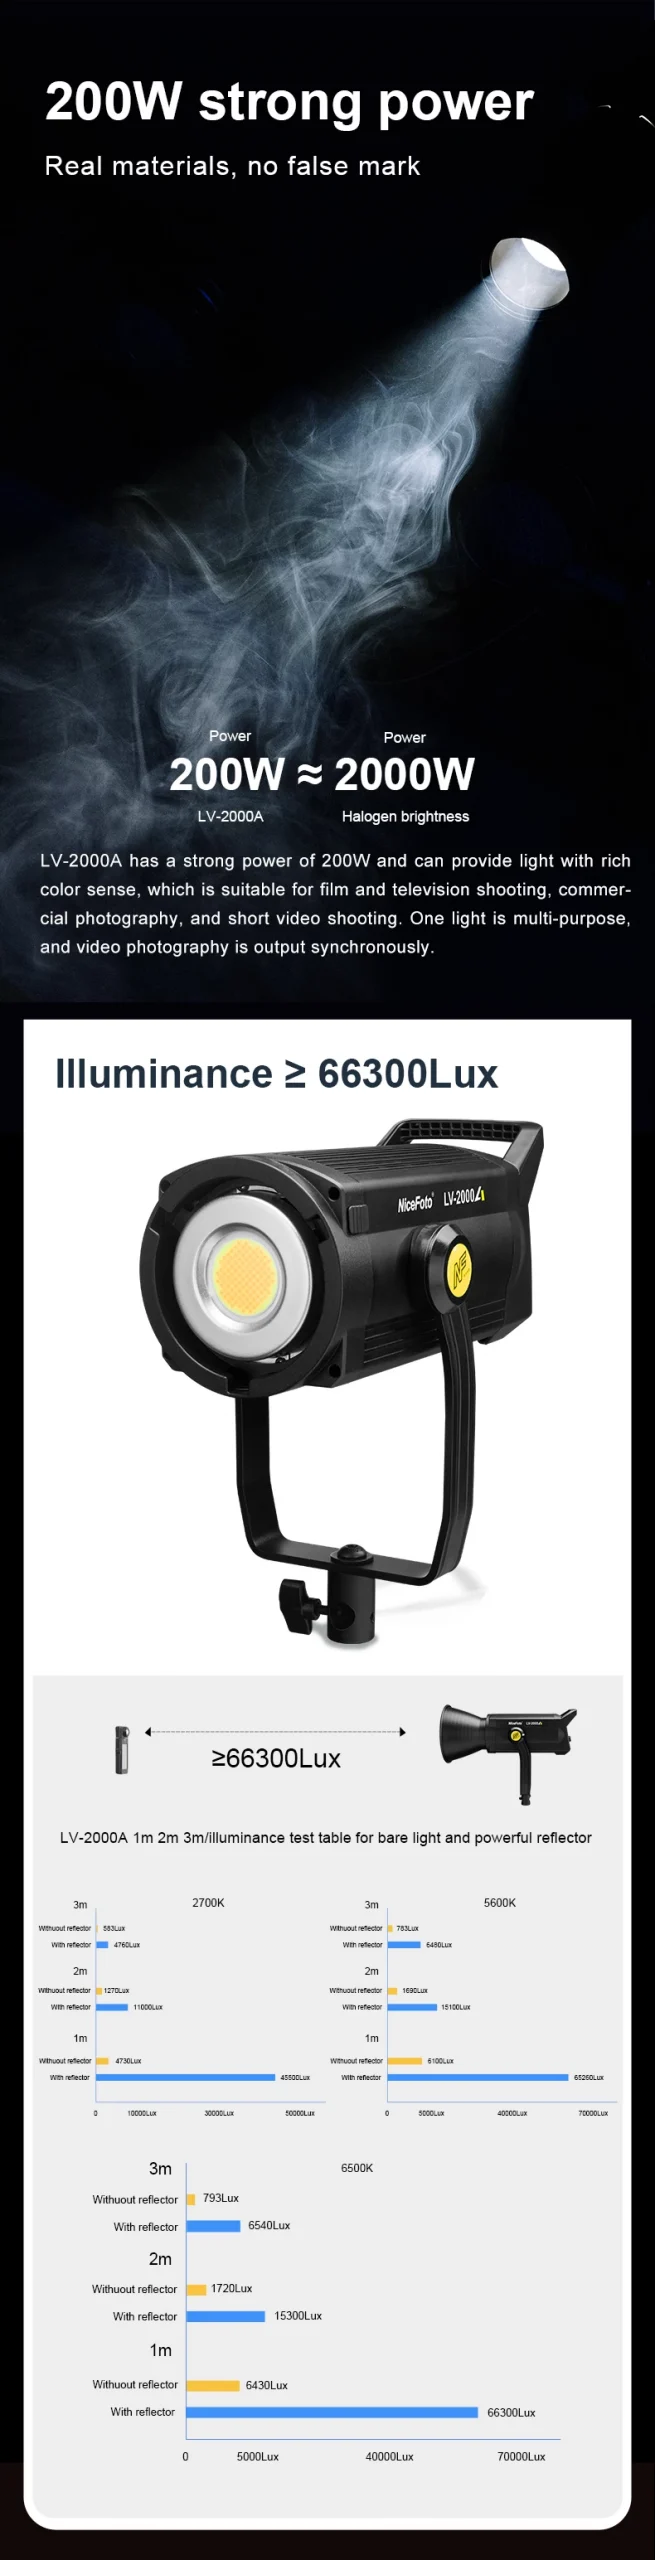 NiceFoto LV-1500A LED Video Light-Des2